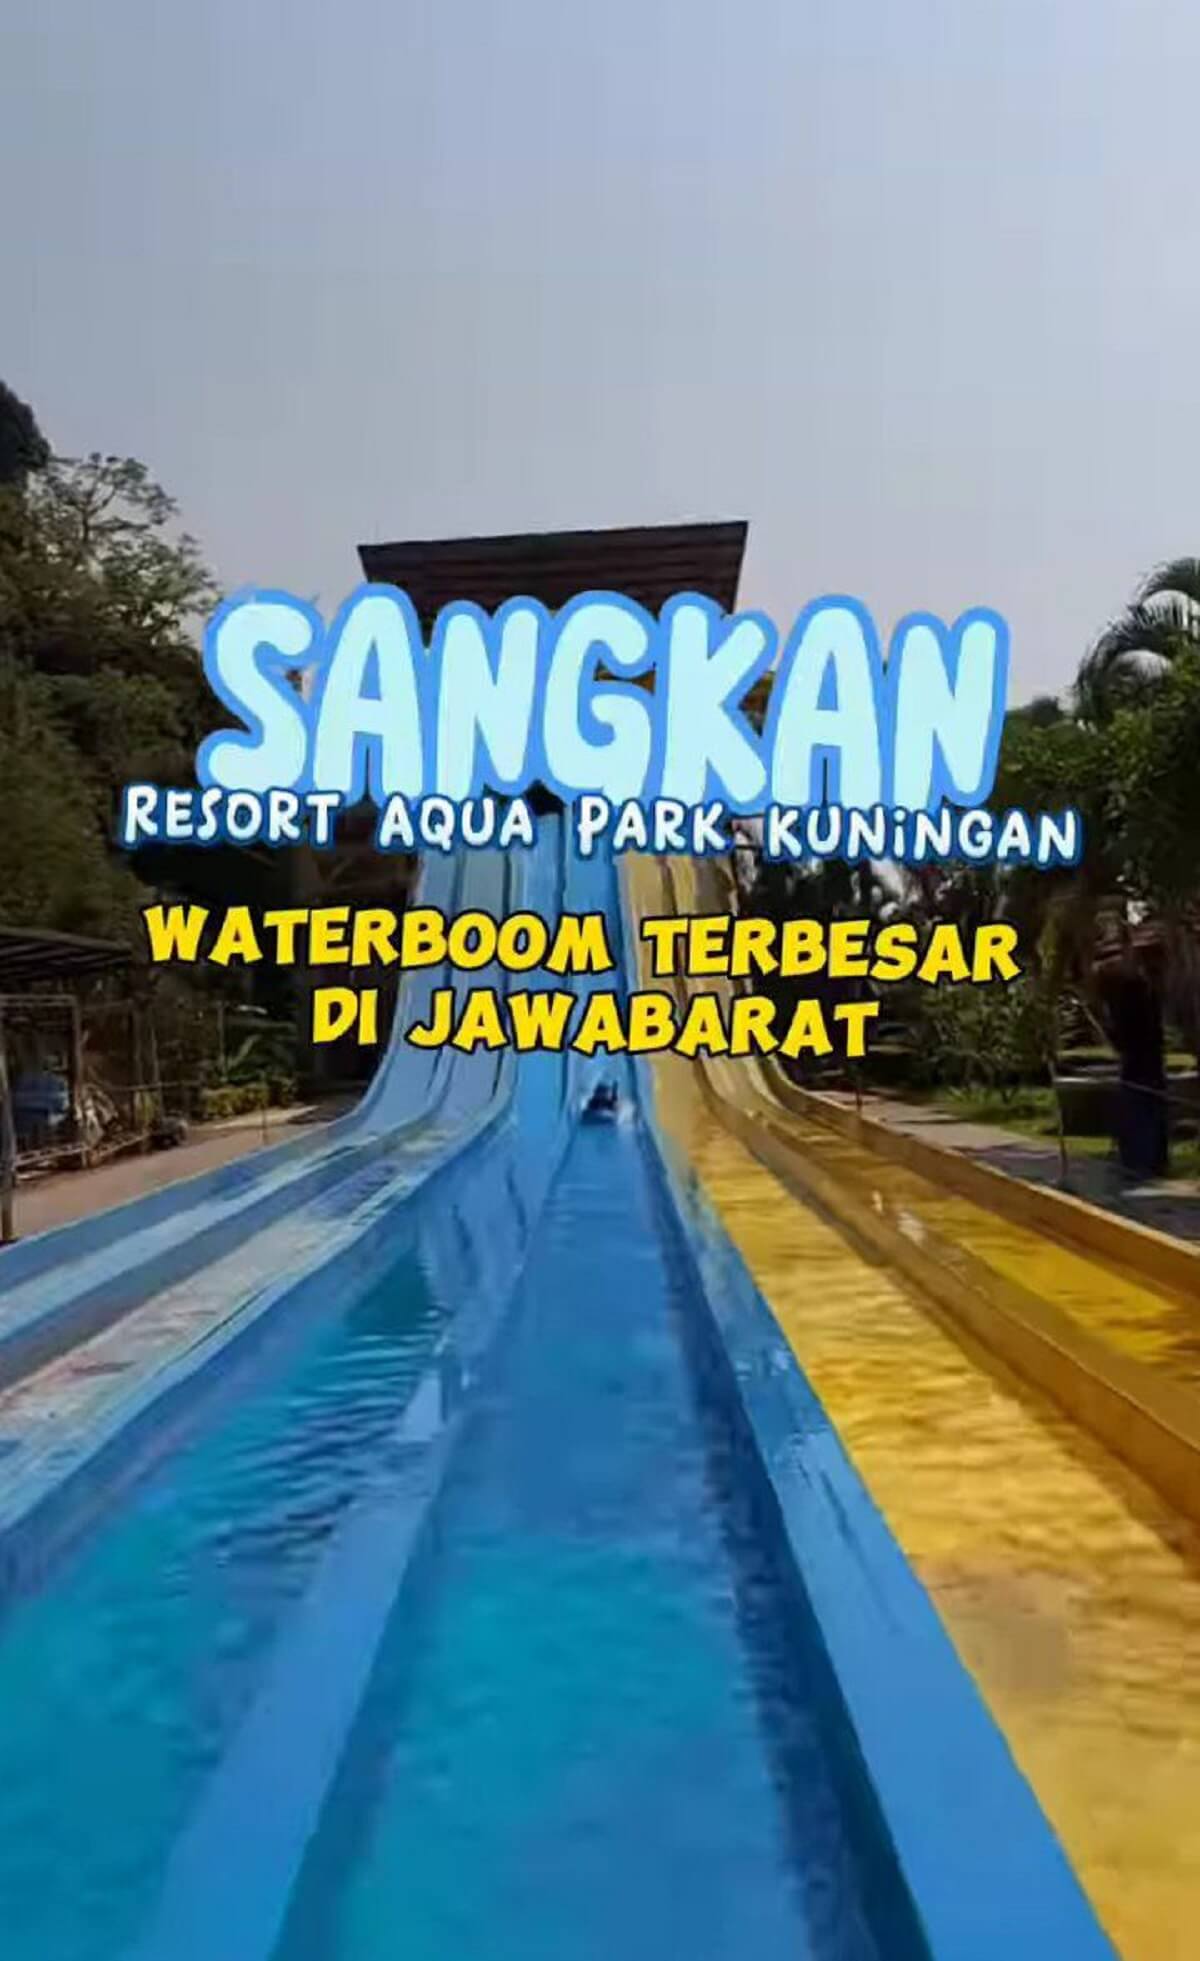 WISATA TERBESAR KUNINGAN! Sangkan Resorts Aqua Park